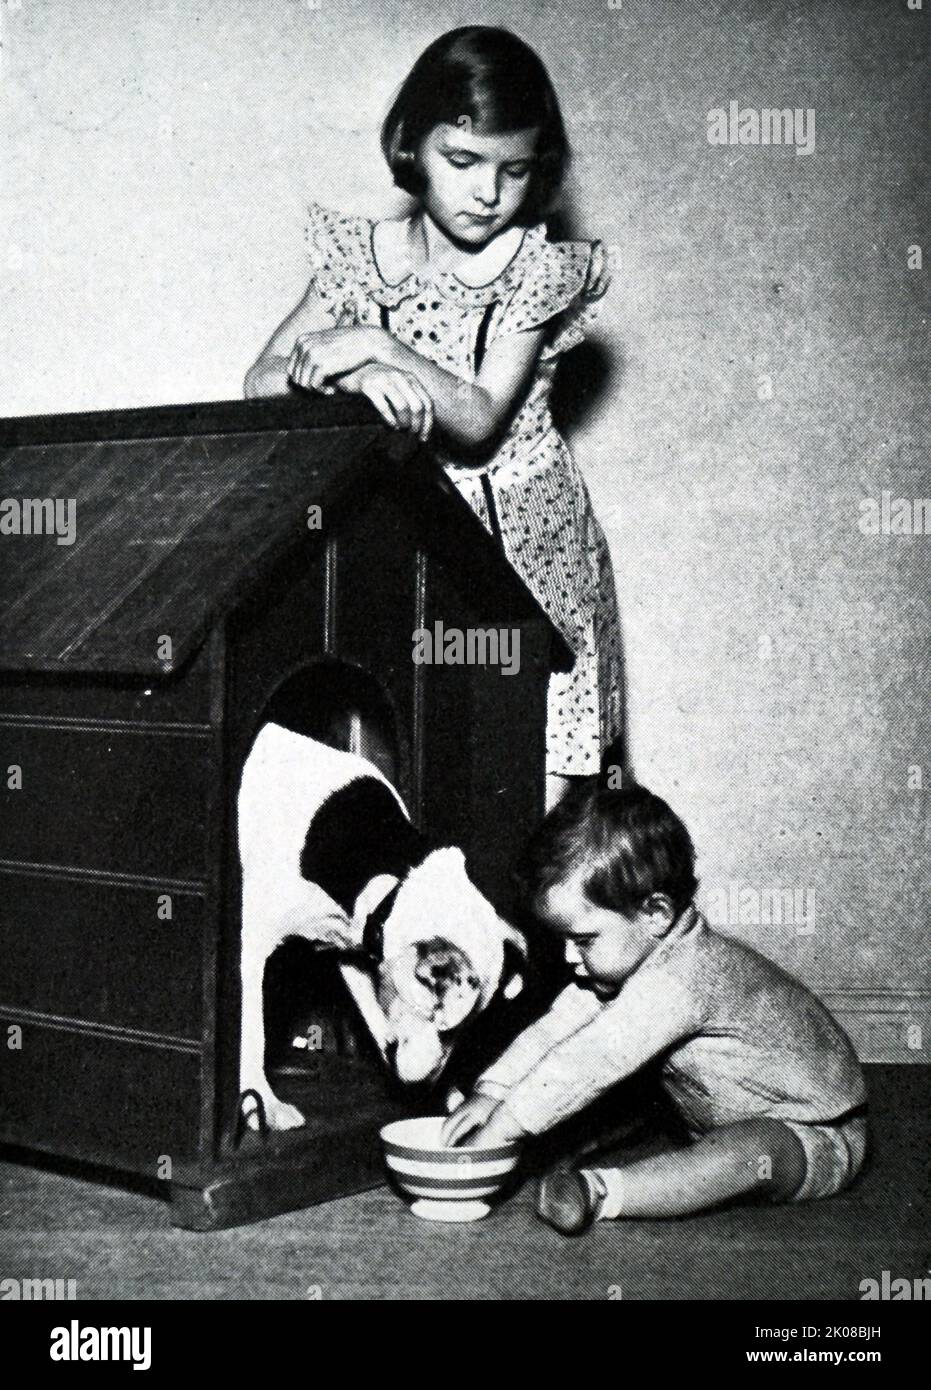 Frère et sœur jouant avec le chien de famille. Illustration dans un journal de la vie de famille en Grande-Bretagne en 1950s Banque D'Images